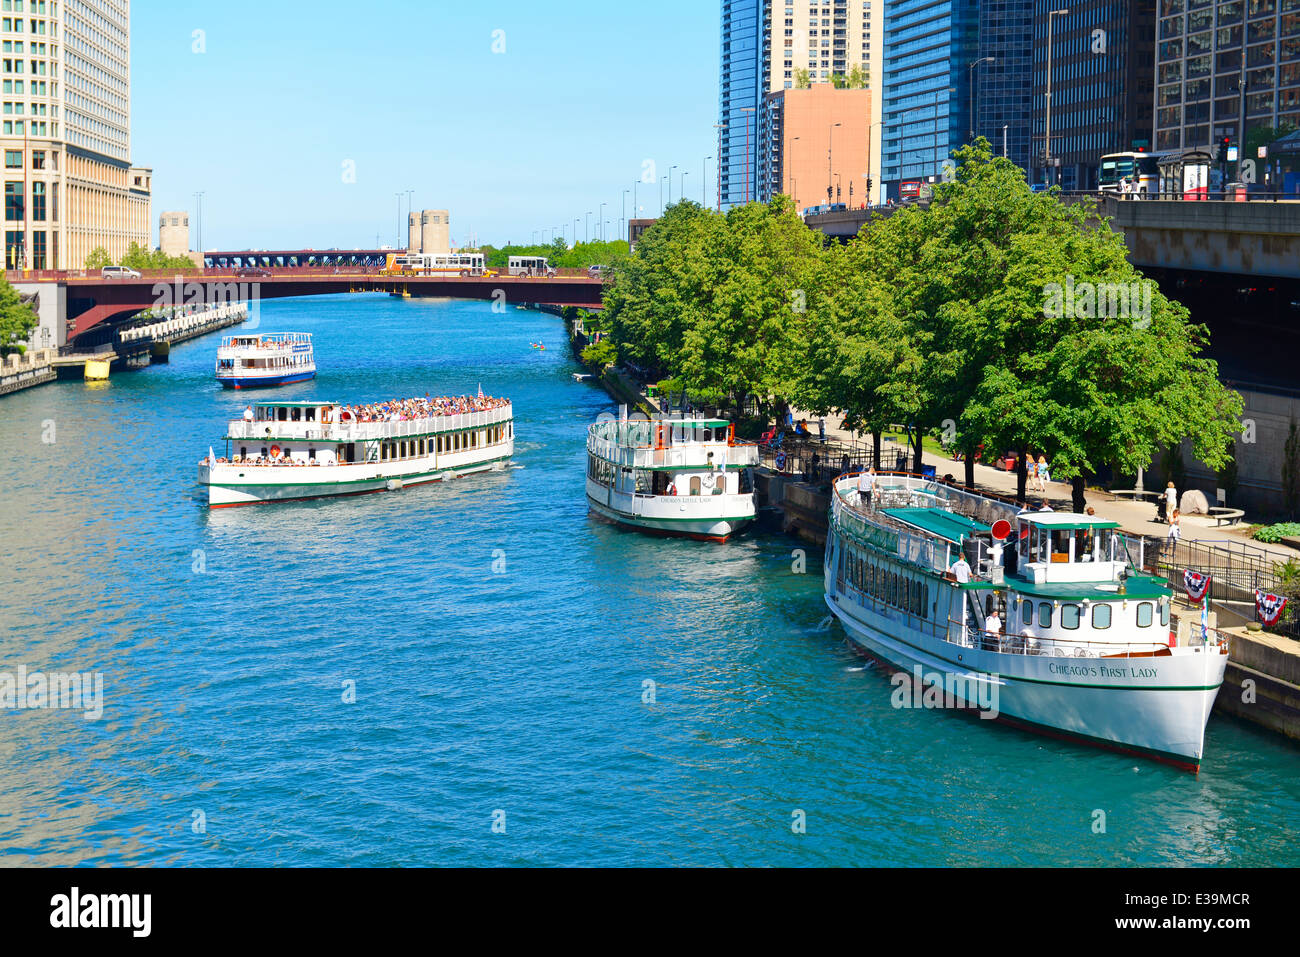 Chicago River Cruise, imbarcazione turistica,barche lungo il famoso Riverwalk di Chicago, Illinois, Stati Uniti d'America; Foto Stock